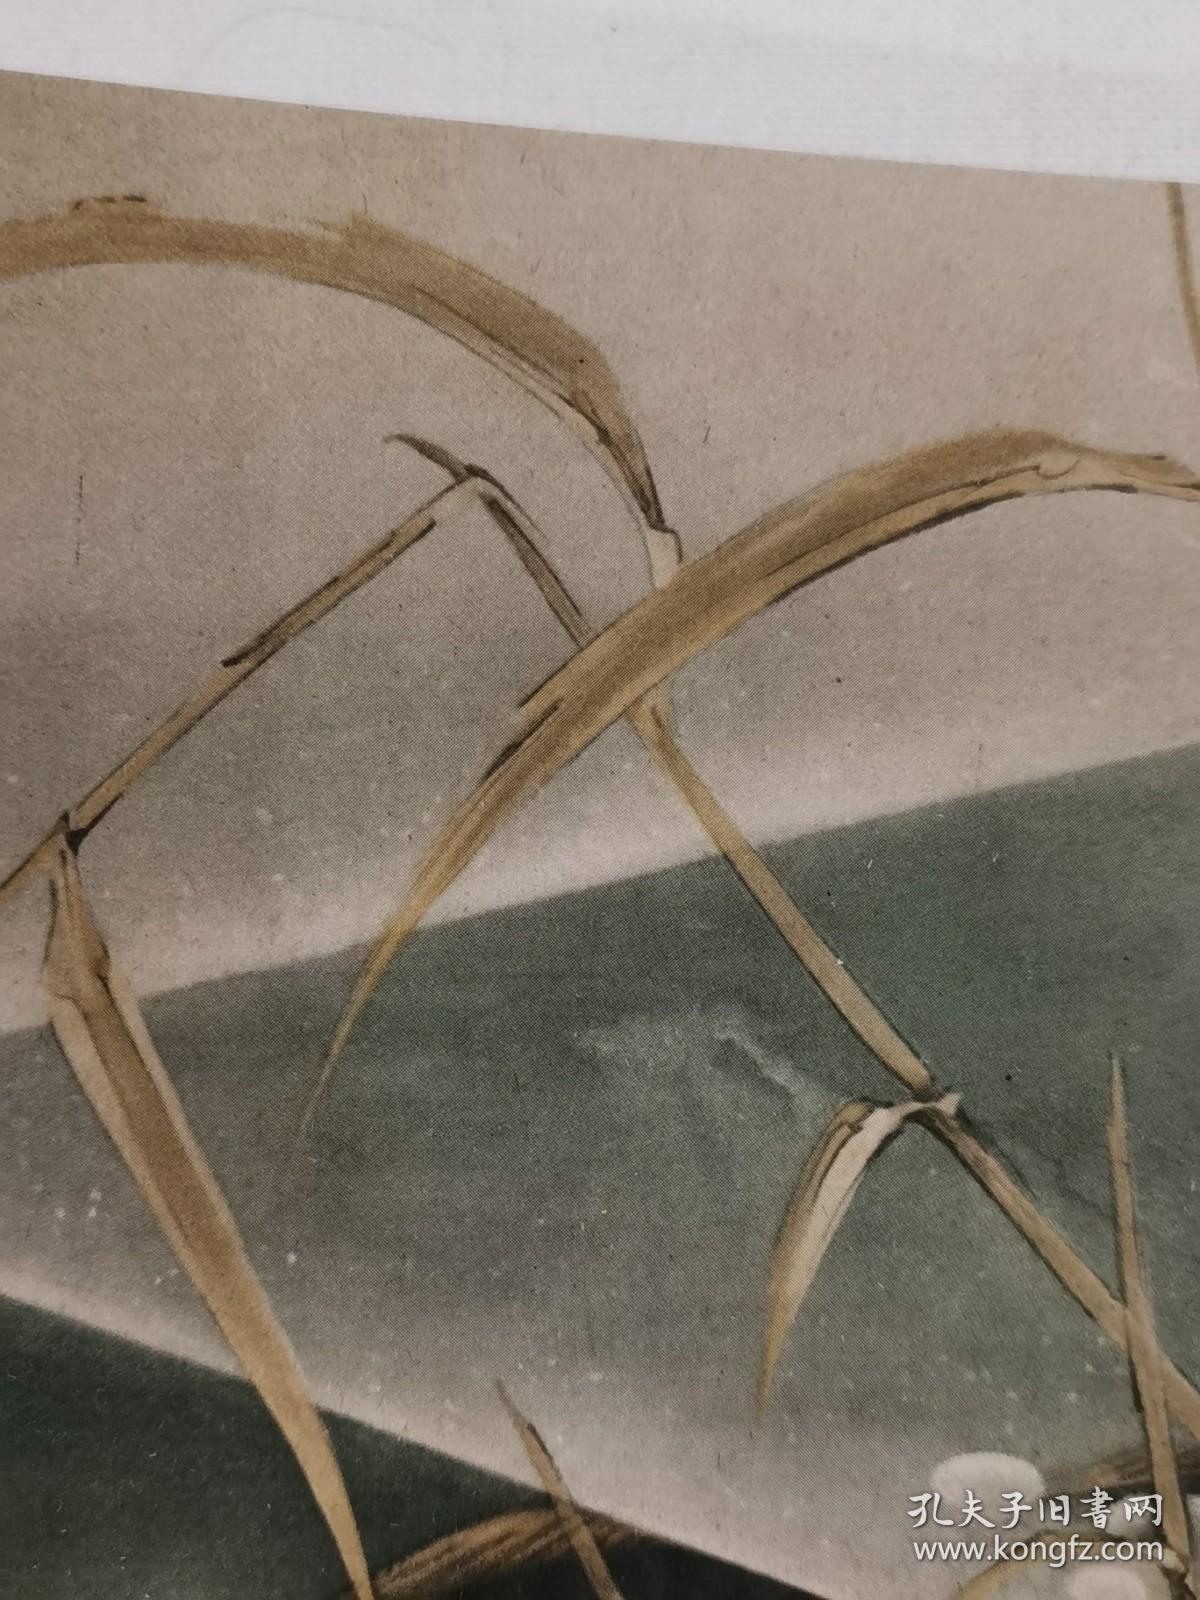 日本回流  日本著名画家 川端龙子《游鱼图》（印刷）  卡纸